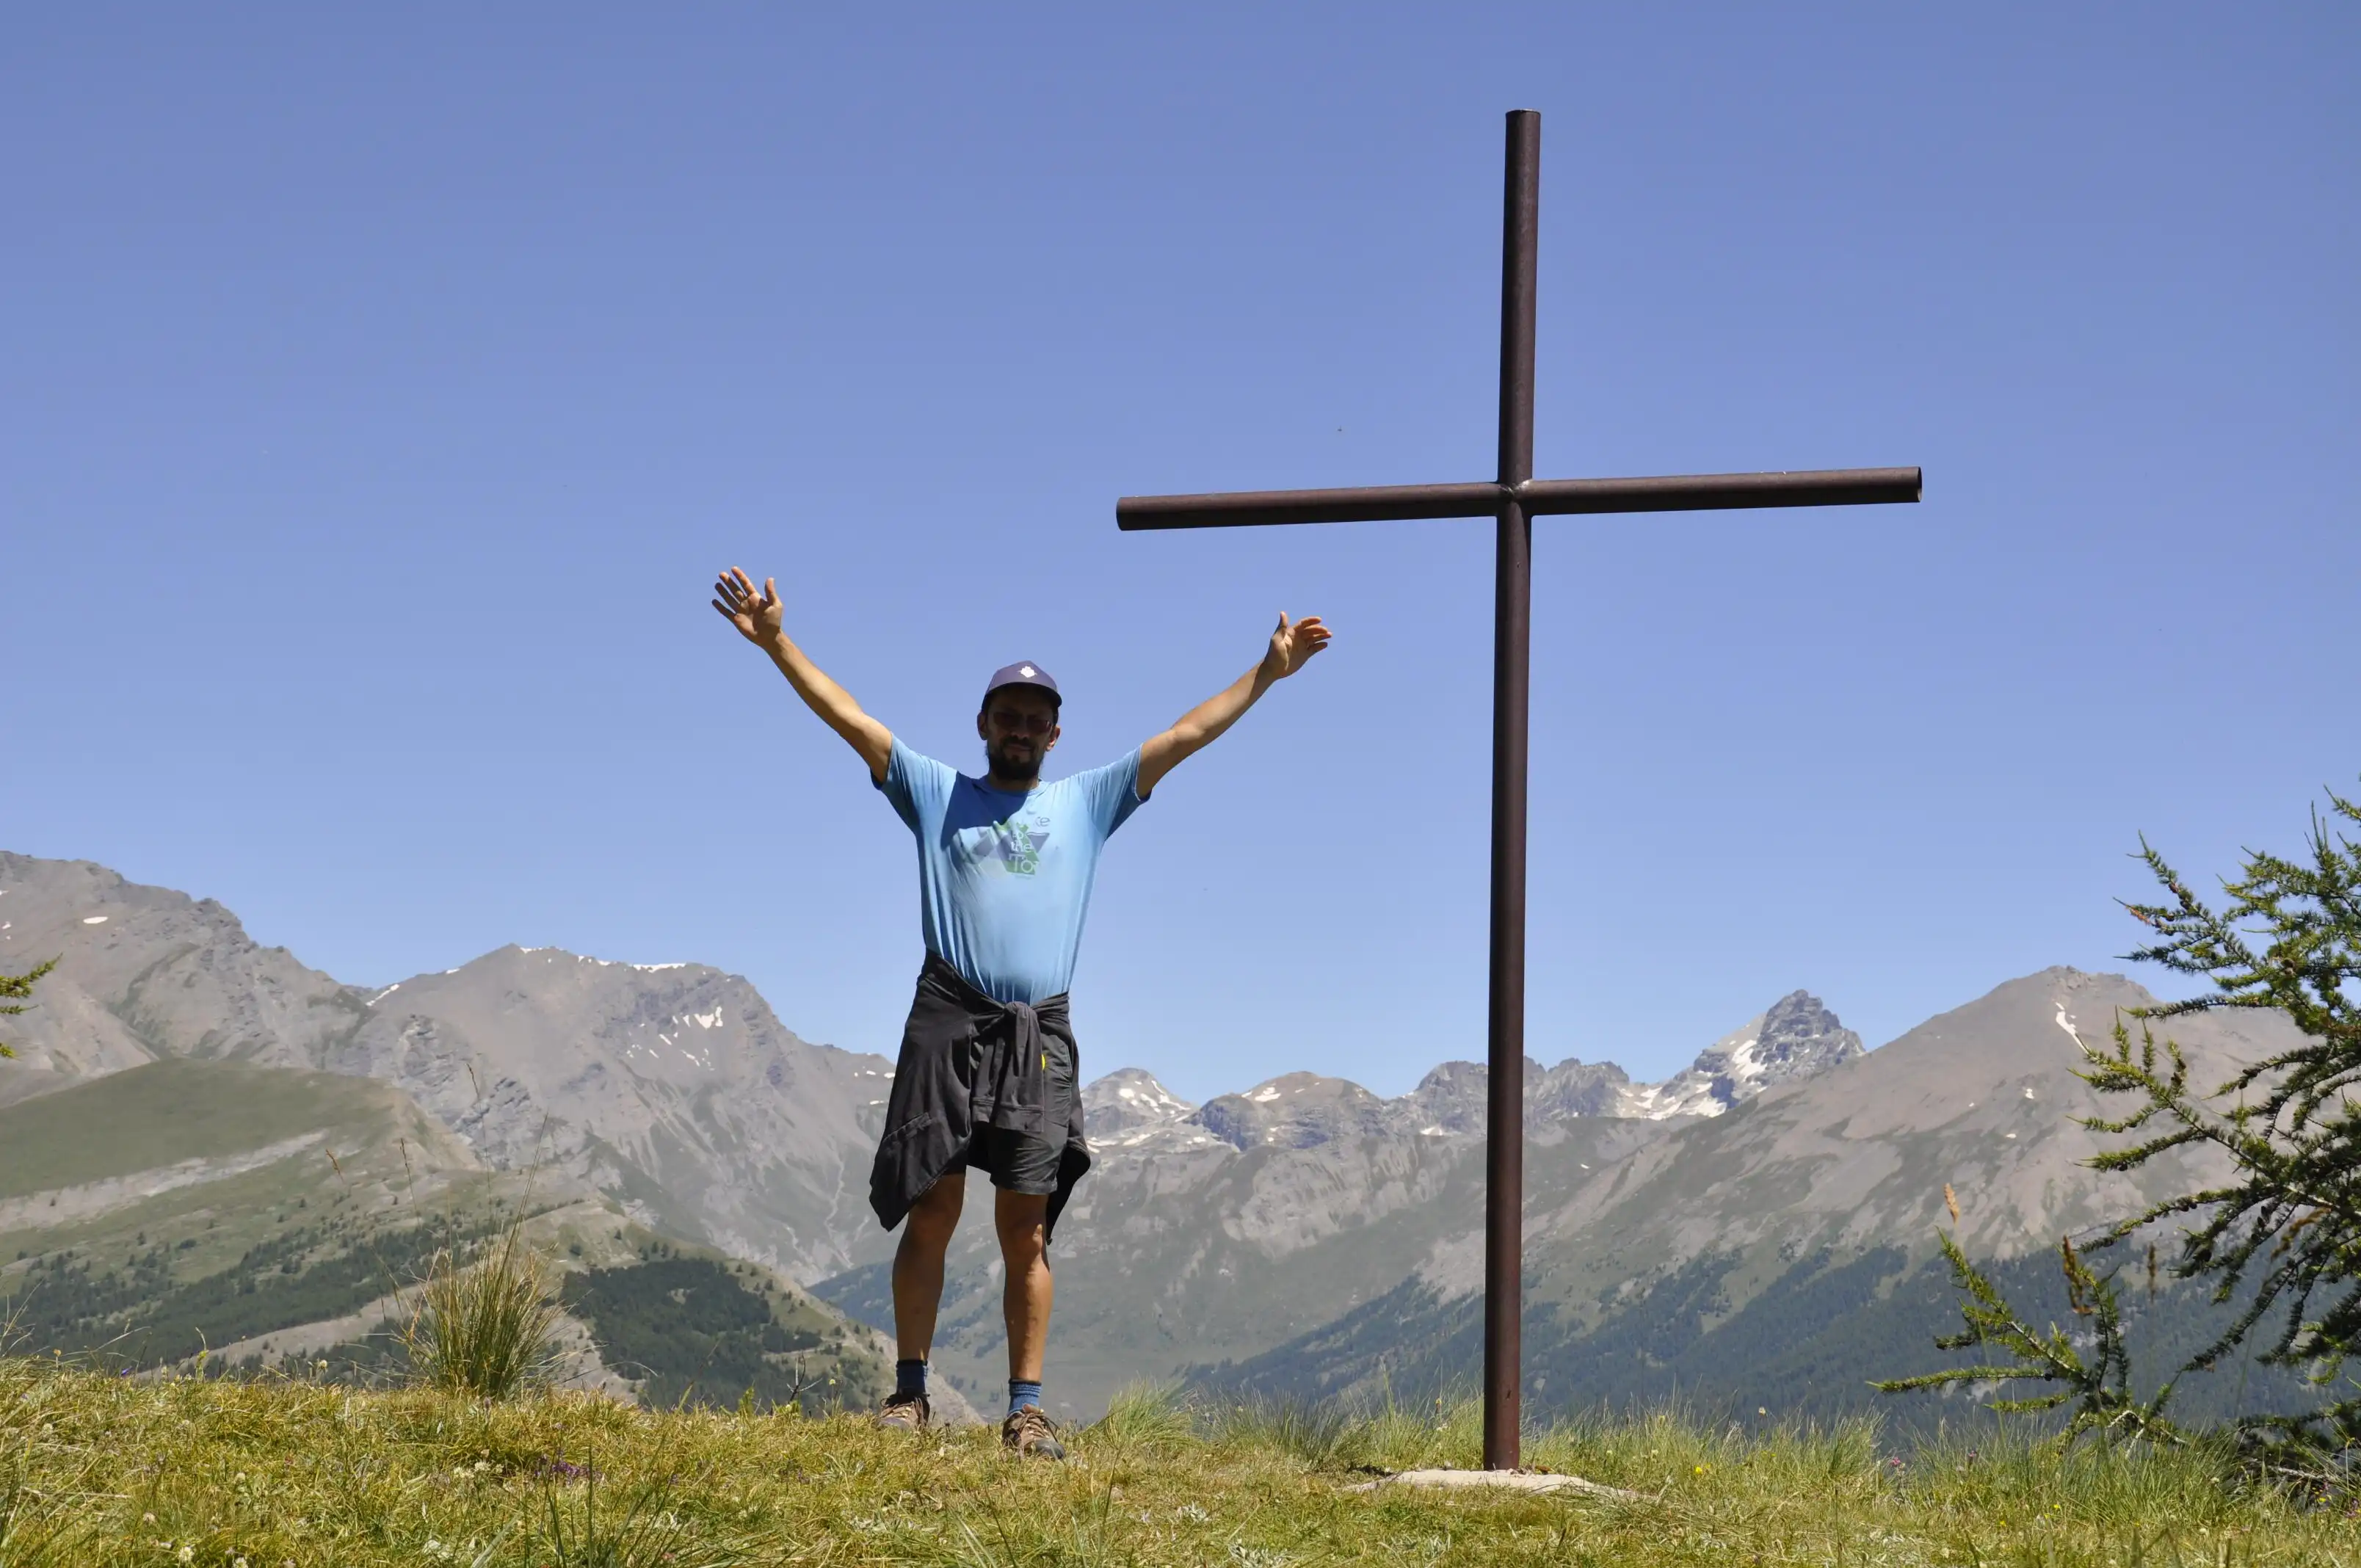 Quattro passi in montagna - Poggio tre croci 2177 mt - Bardonecchia (TO)